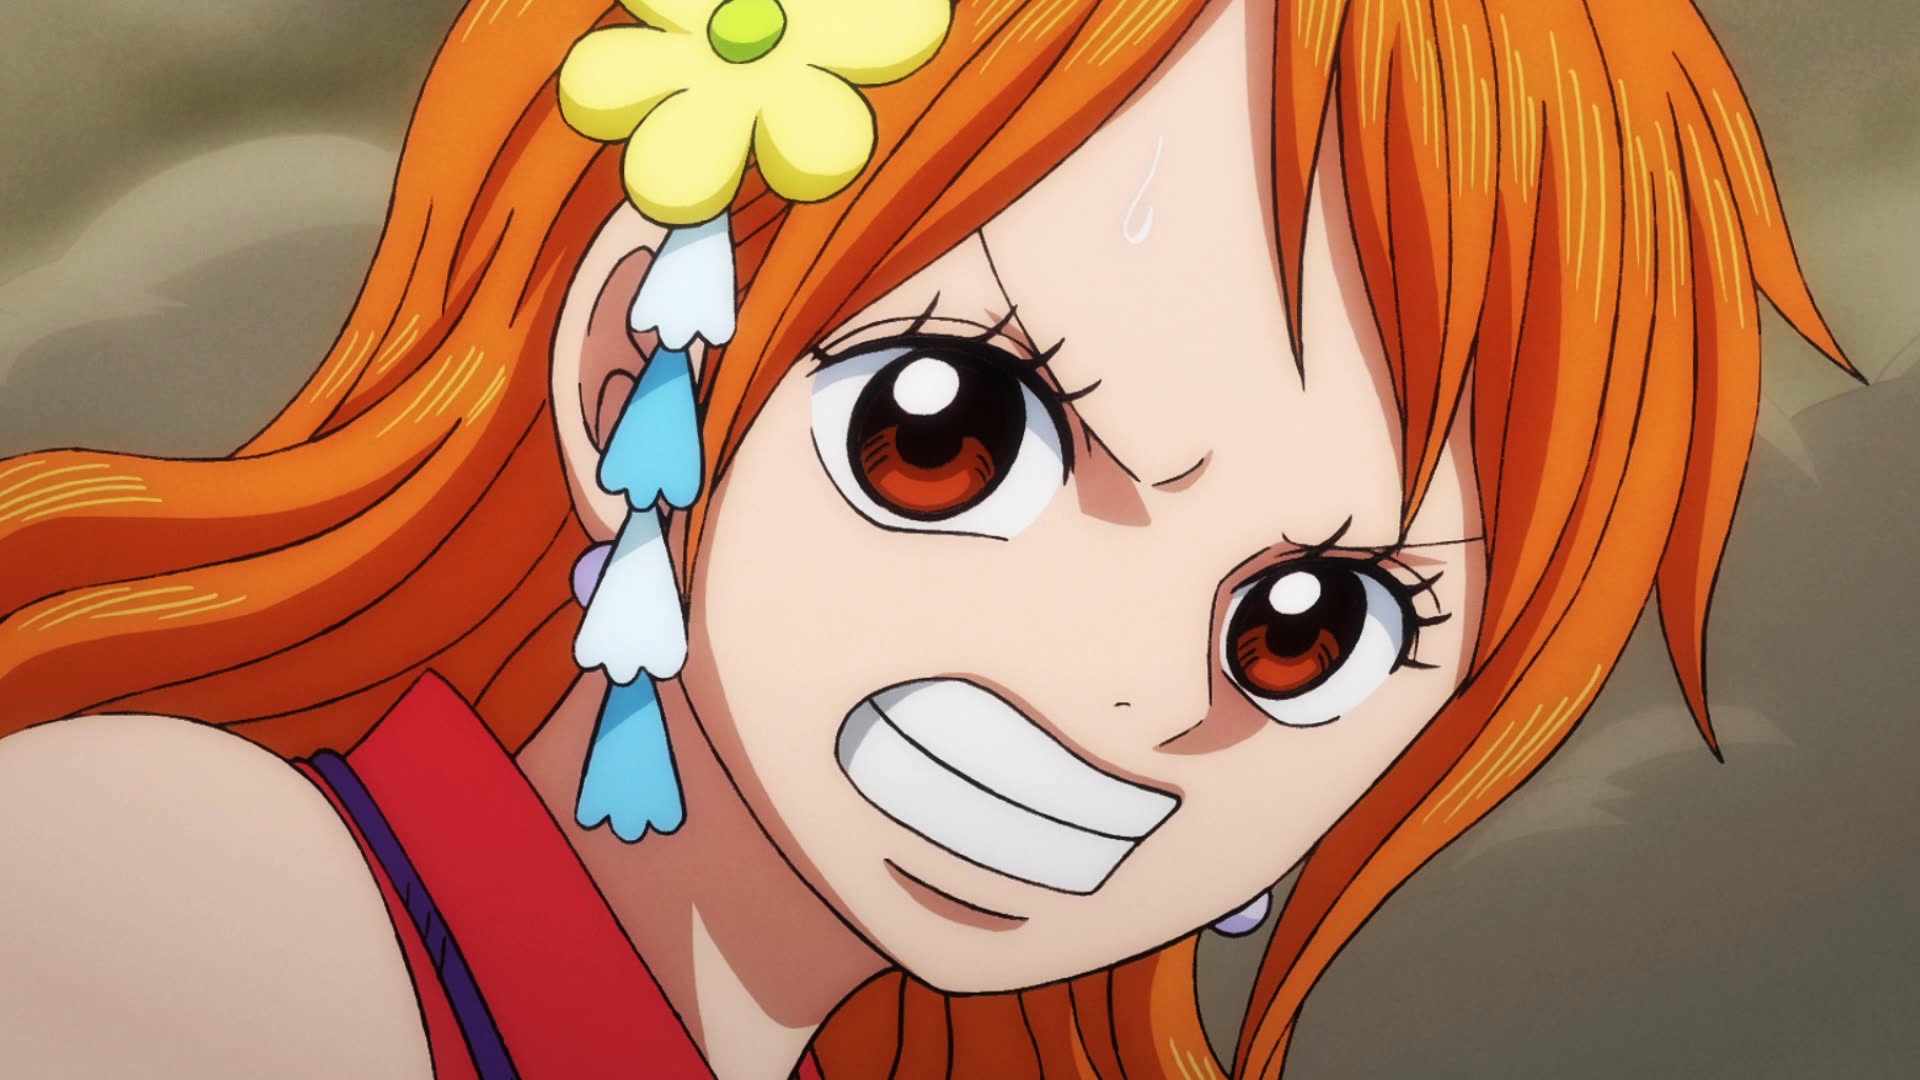 Criador de One Piece faz uma fortuna com o mangá e gasta com coisas  ridículas